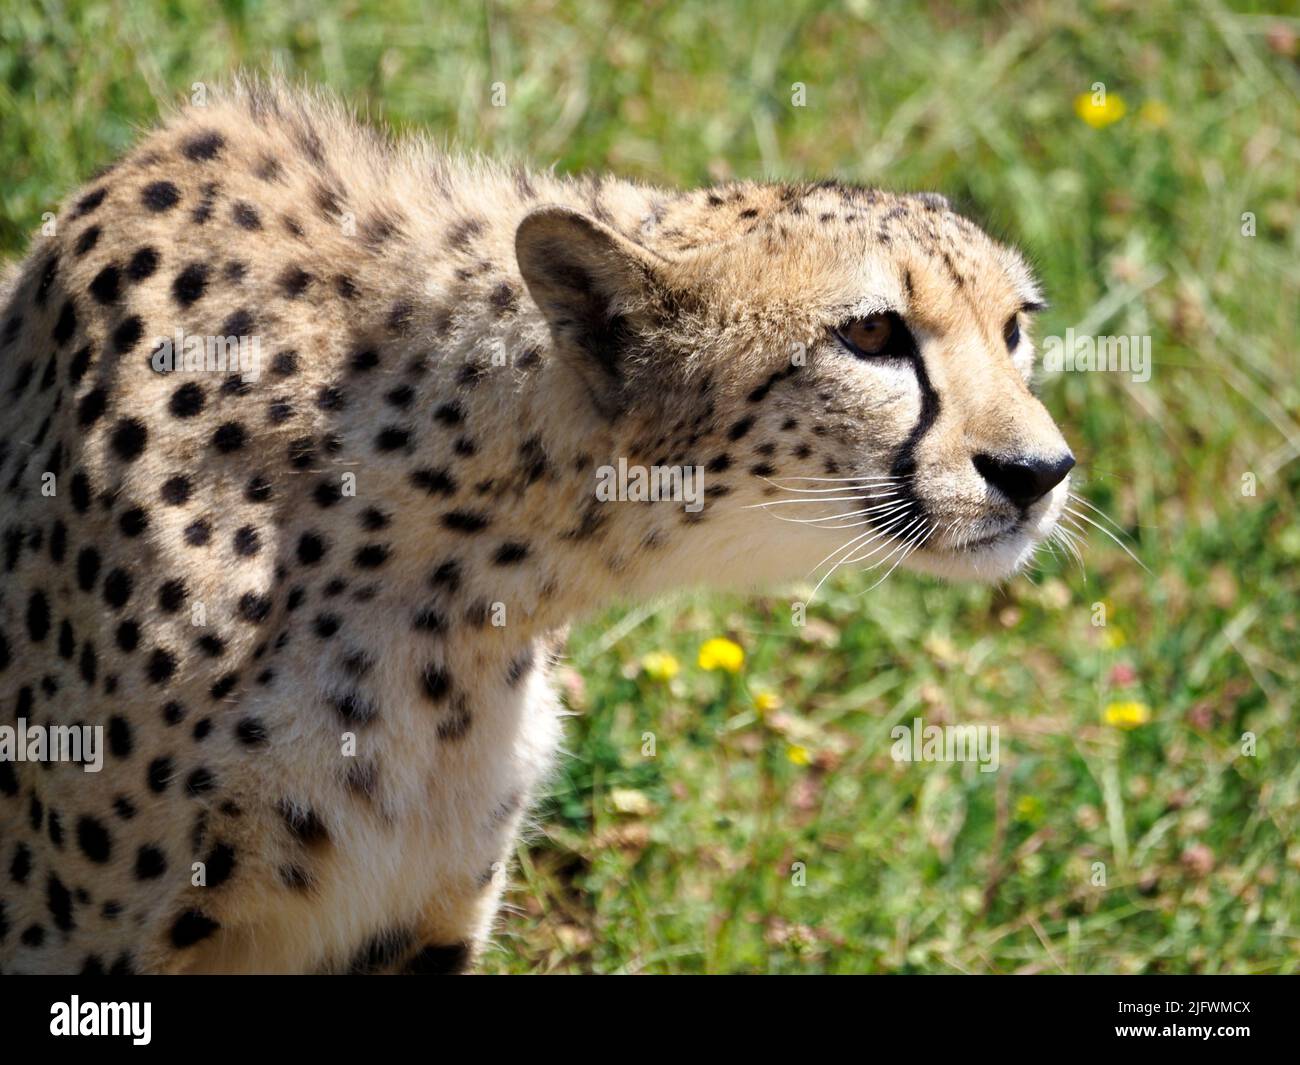 Retrato del guepardo africano (Acinonyx jubatus) visto desde el perfil Foto de stock